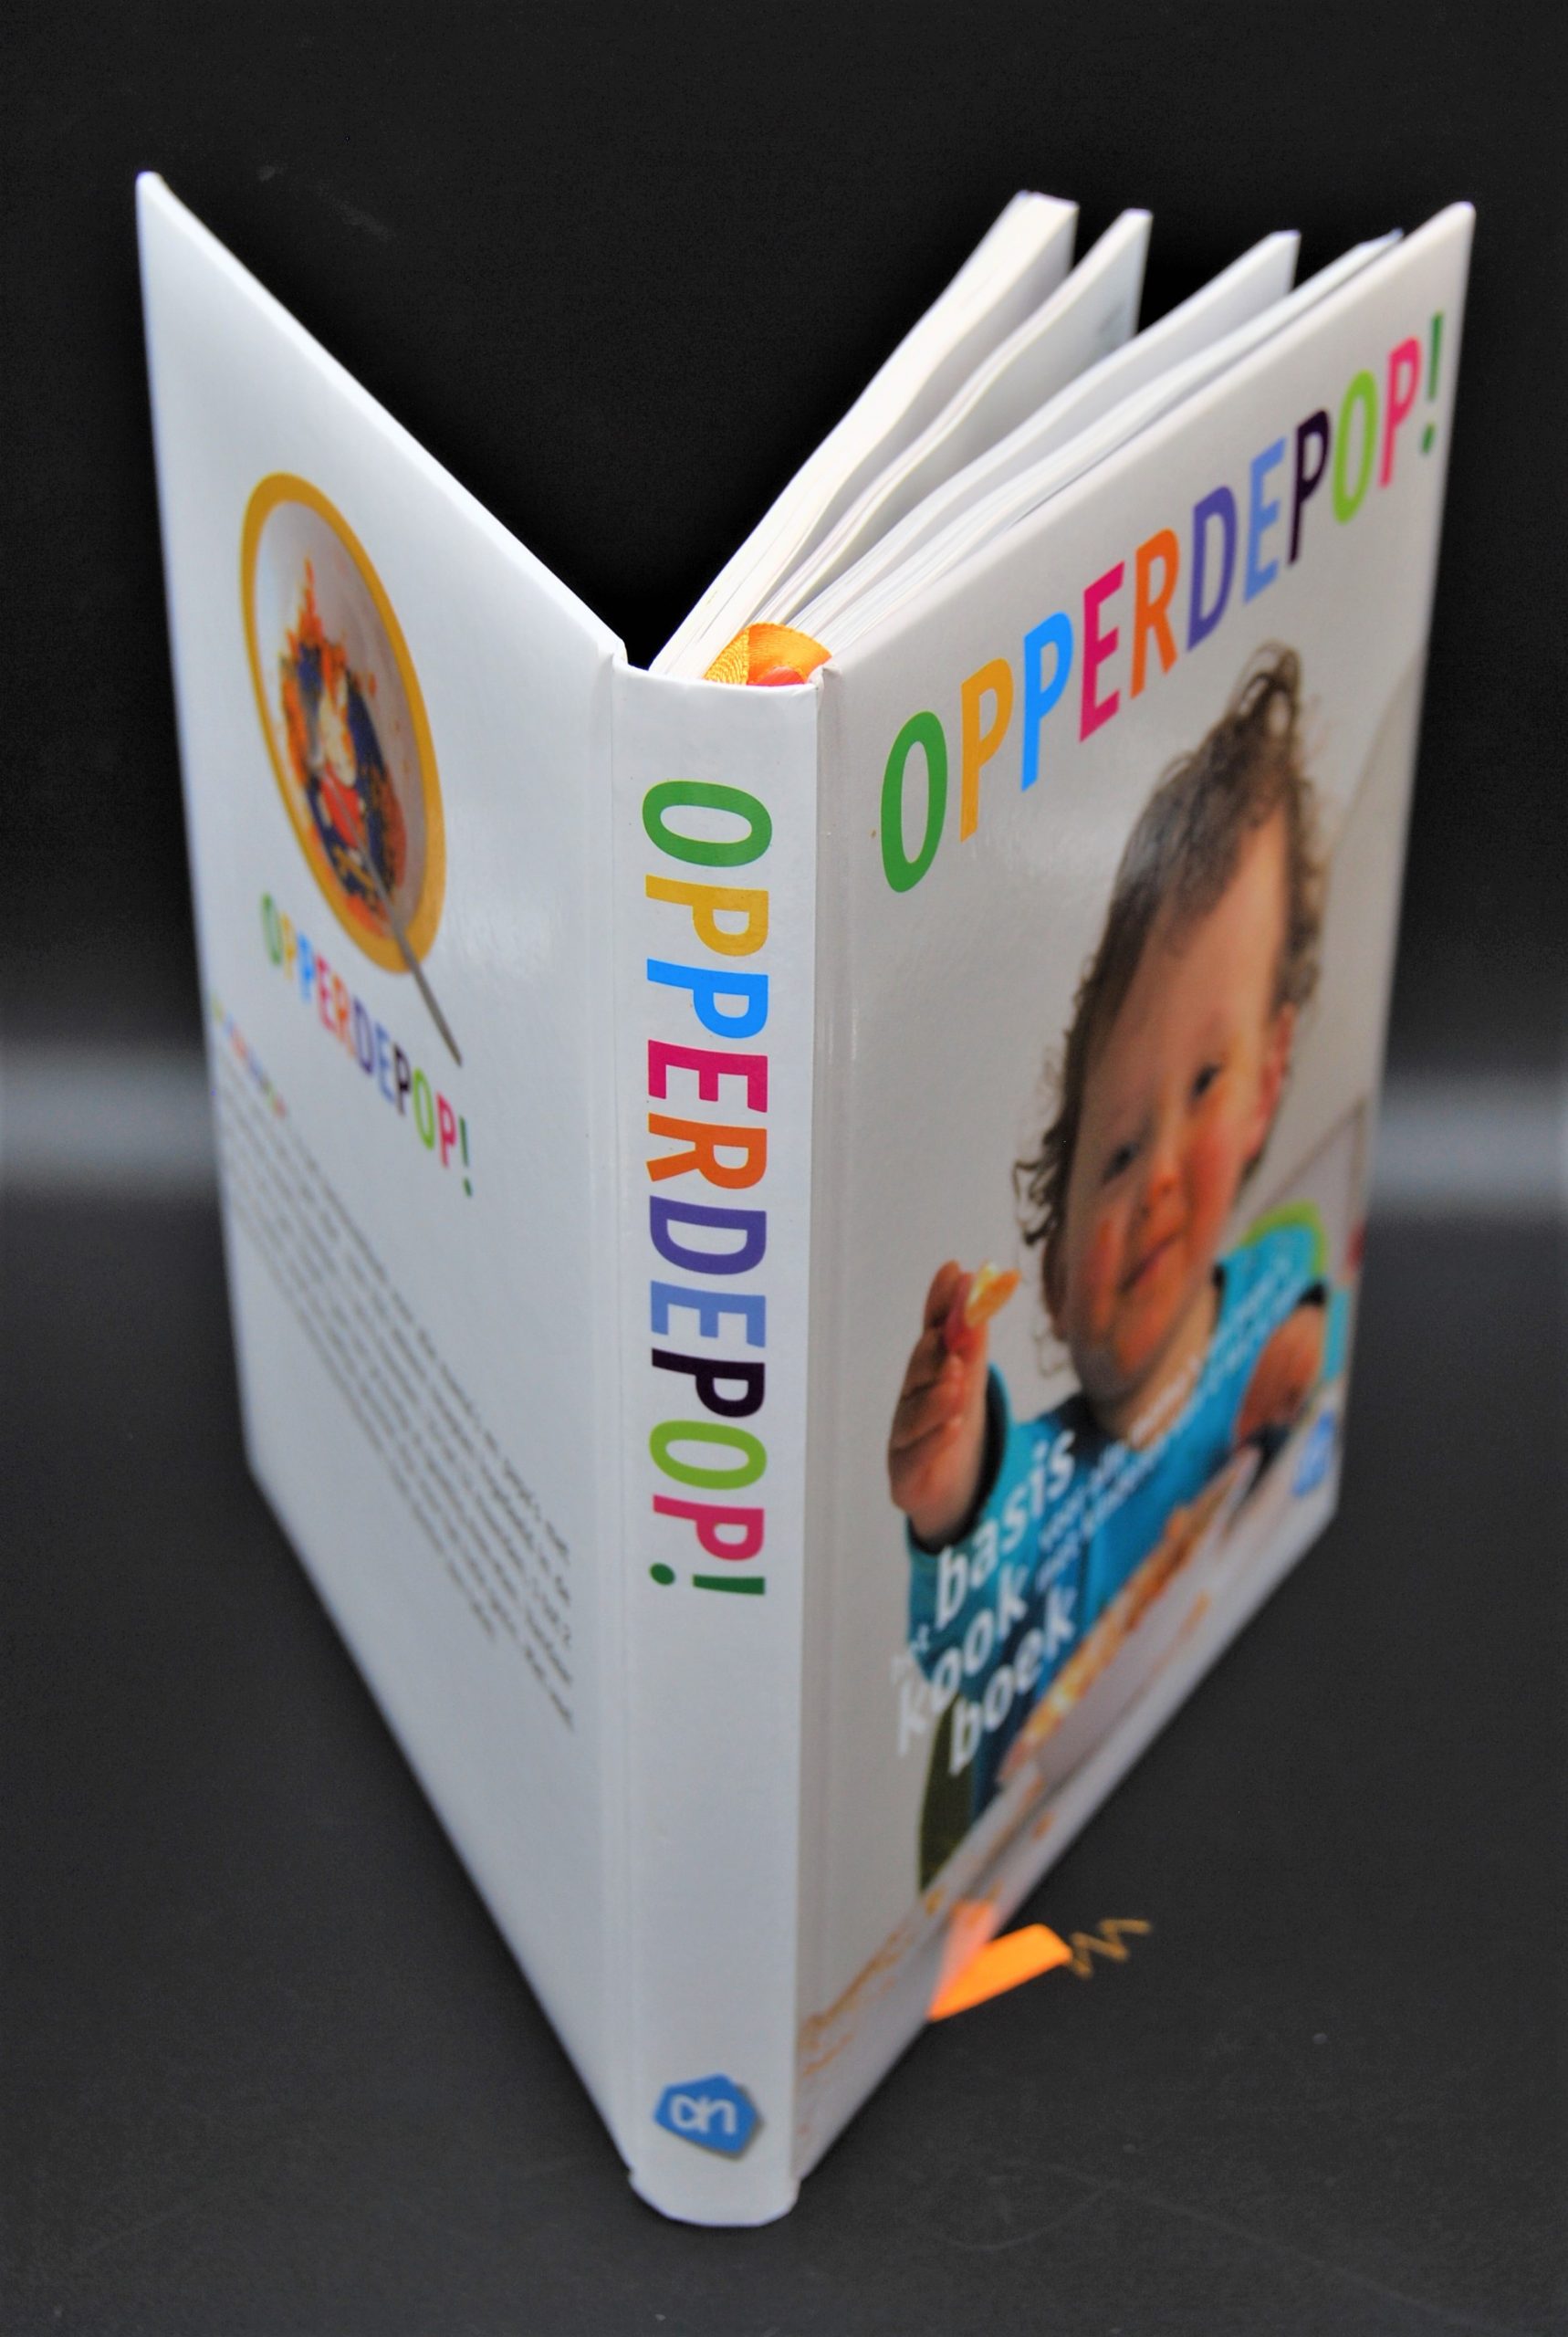 Opperdepop! basiskookboek 0 tot 4 jaar | What's New Today?